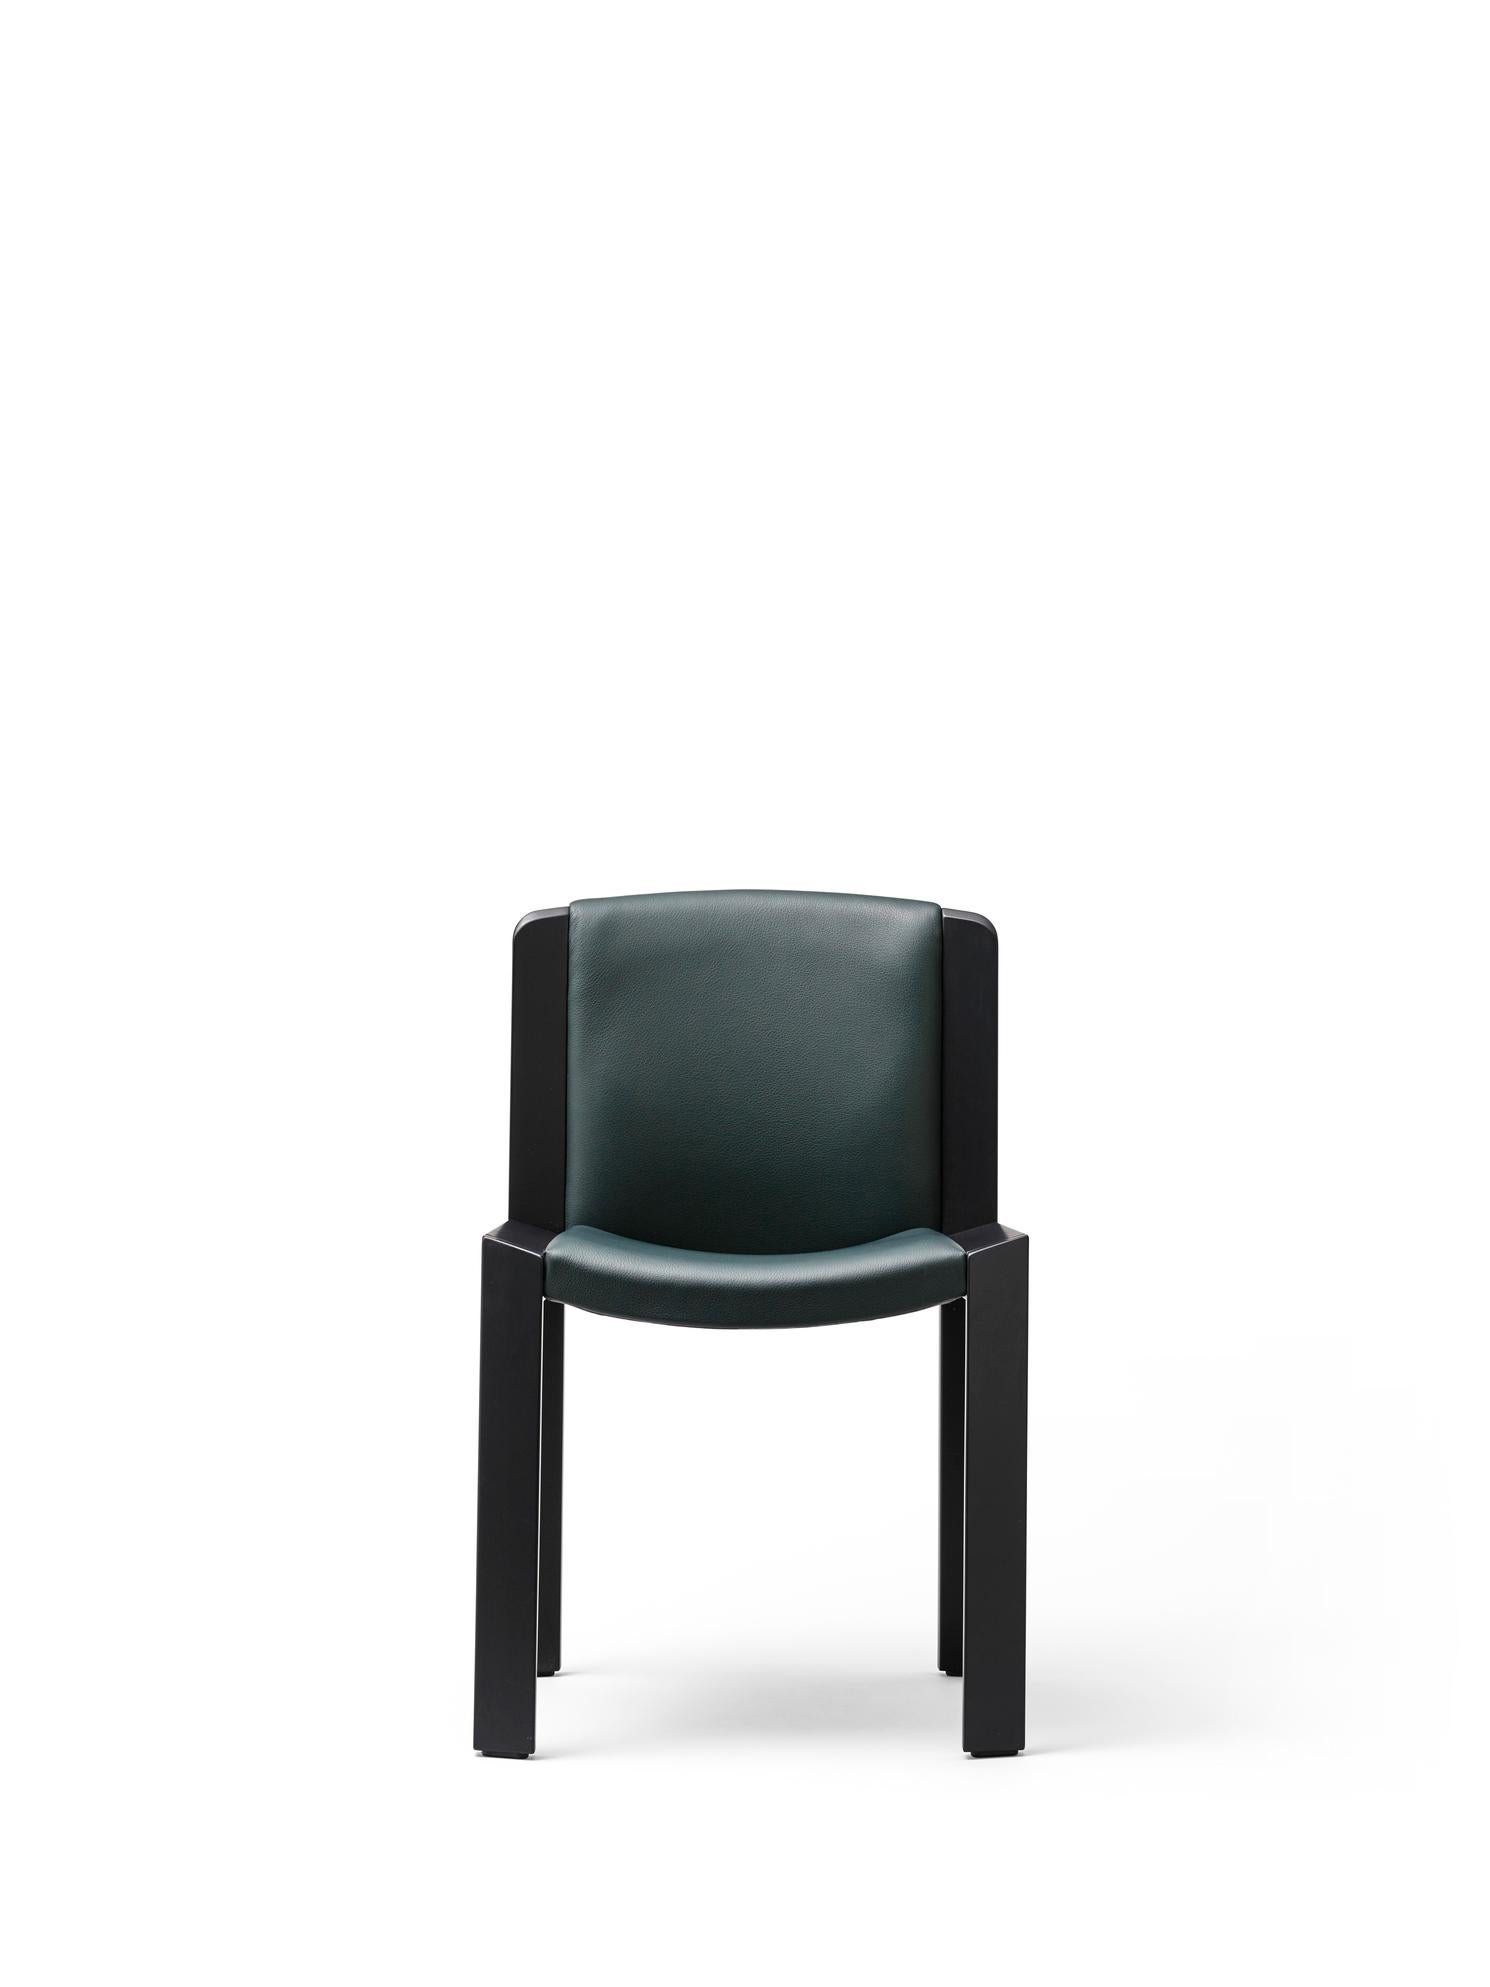 Danois Ensemble de quatre chaises Joe Colombo 'Chair 300' en bois et cuir Sørensen par Karakter en vente